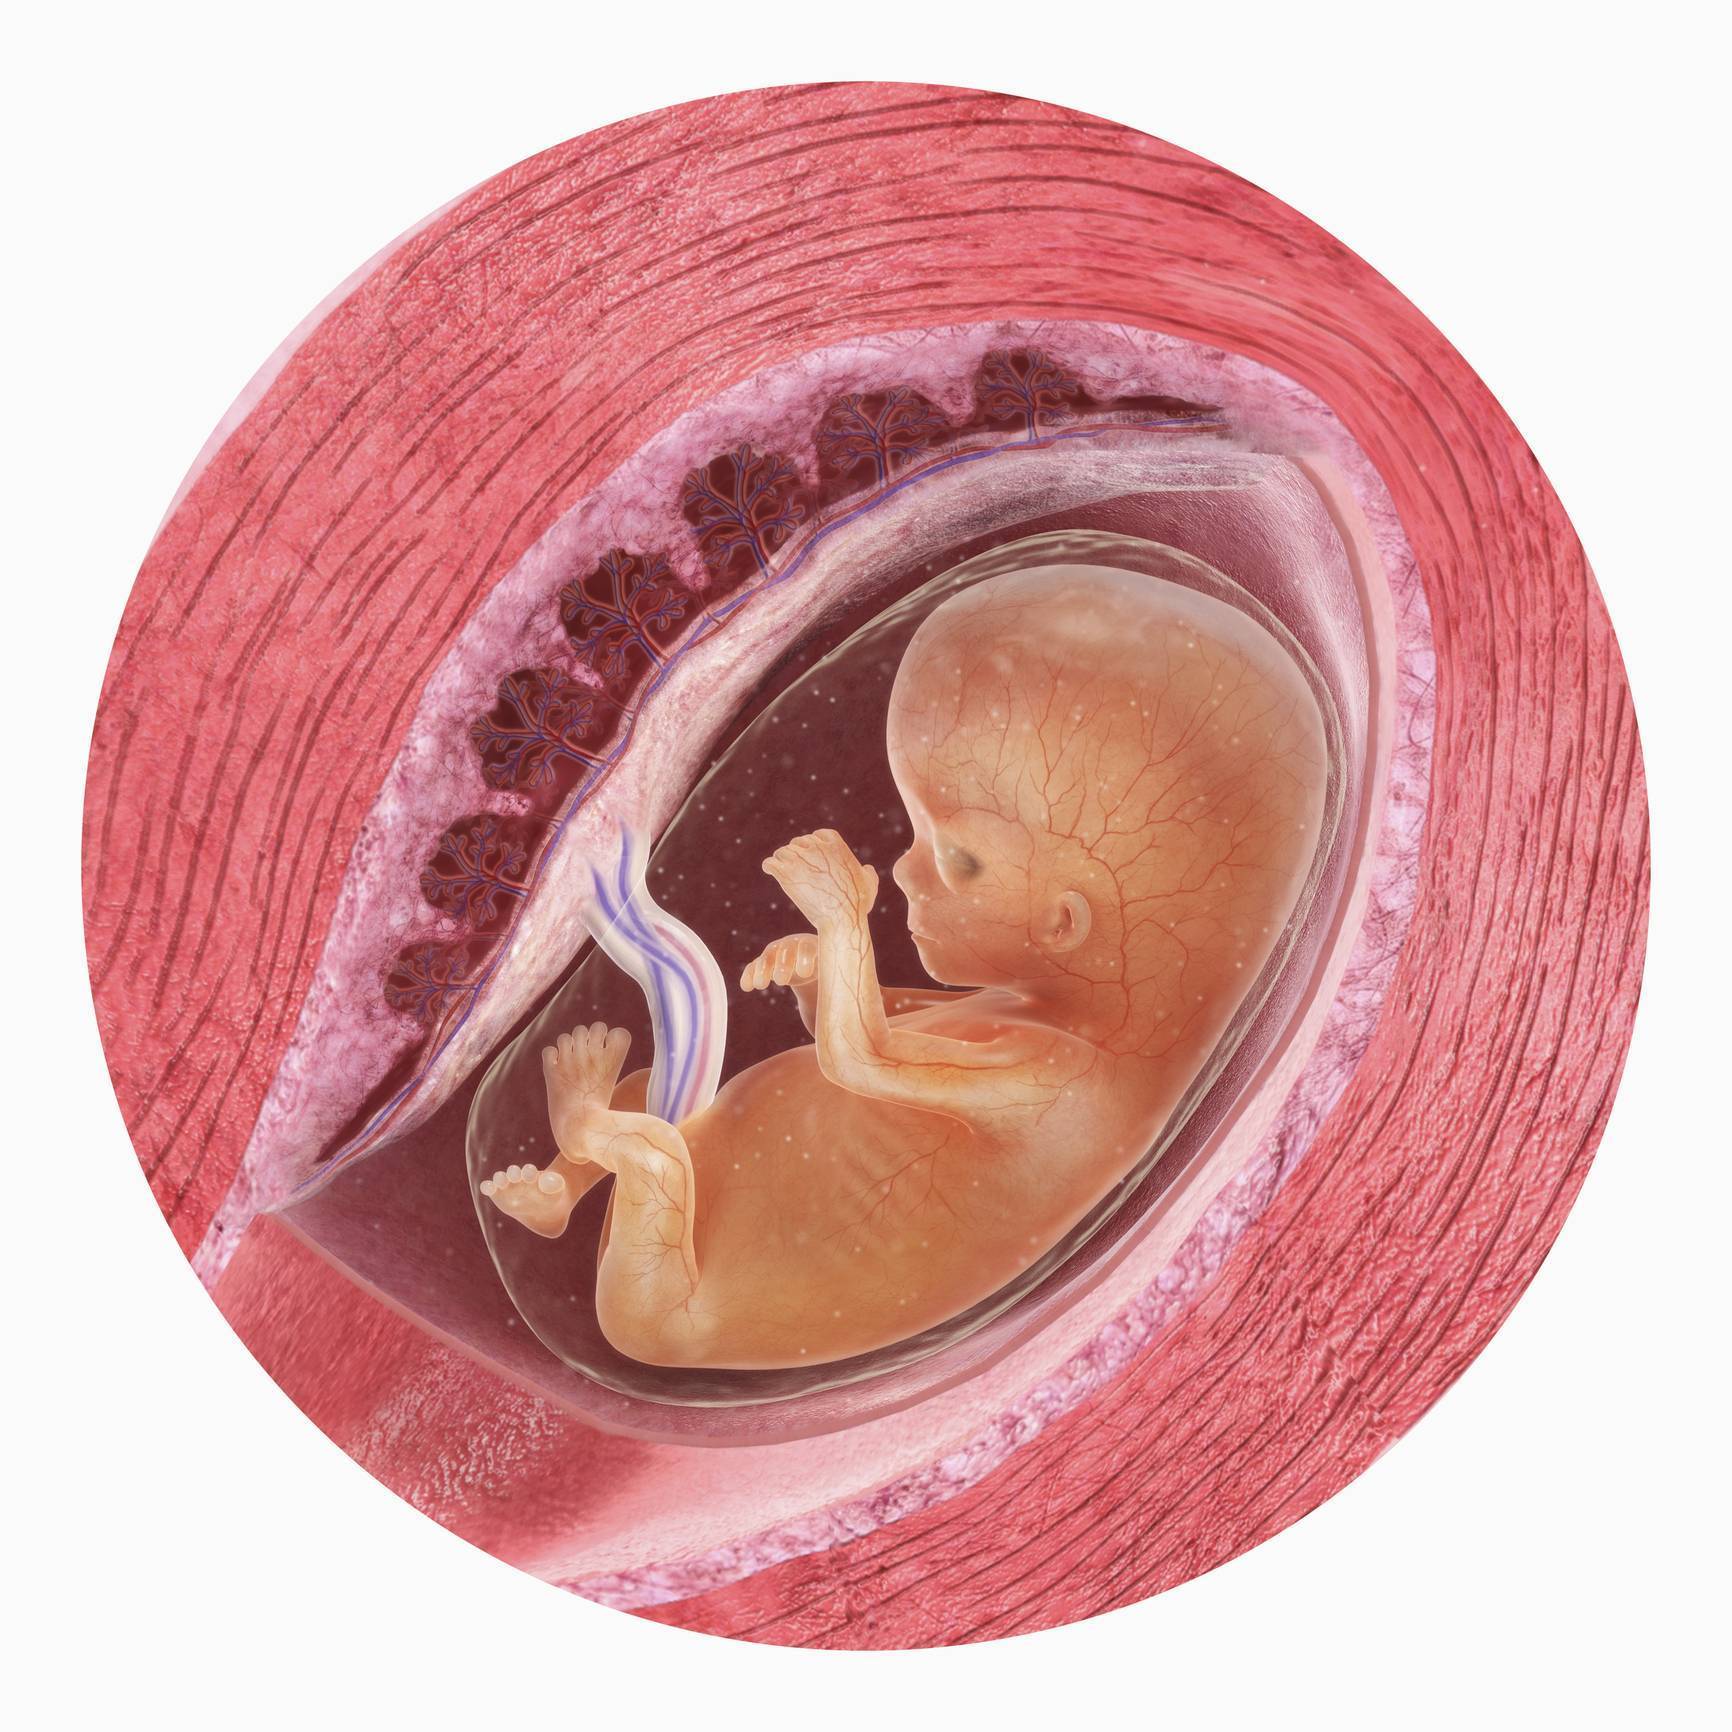 Плод 11 недель фото. Эмбрион на 11 неделе беременности. 11 Неделя беременности 11 неделя беременности. 11 Недель беременности фото плода. Плод 11 недель беременности фото размер плода.